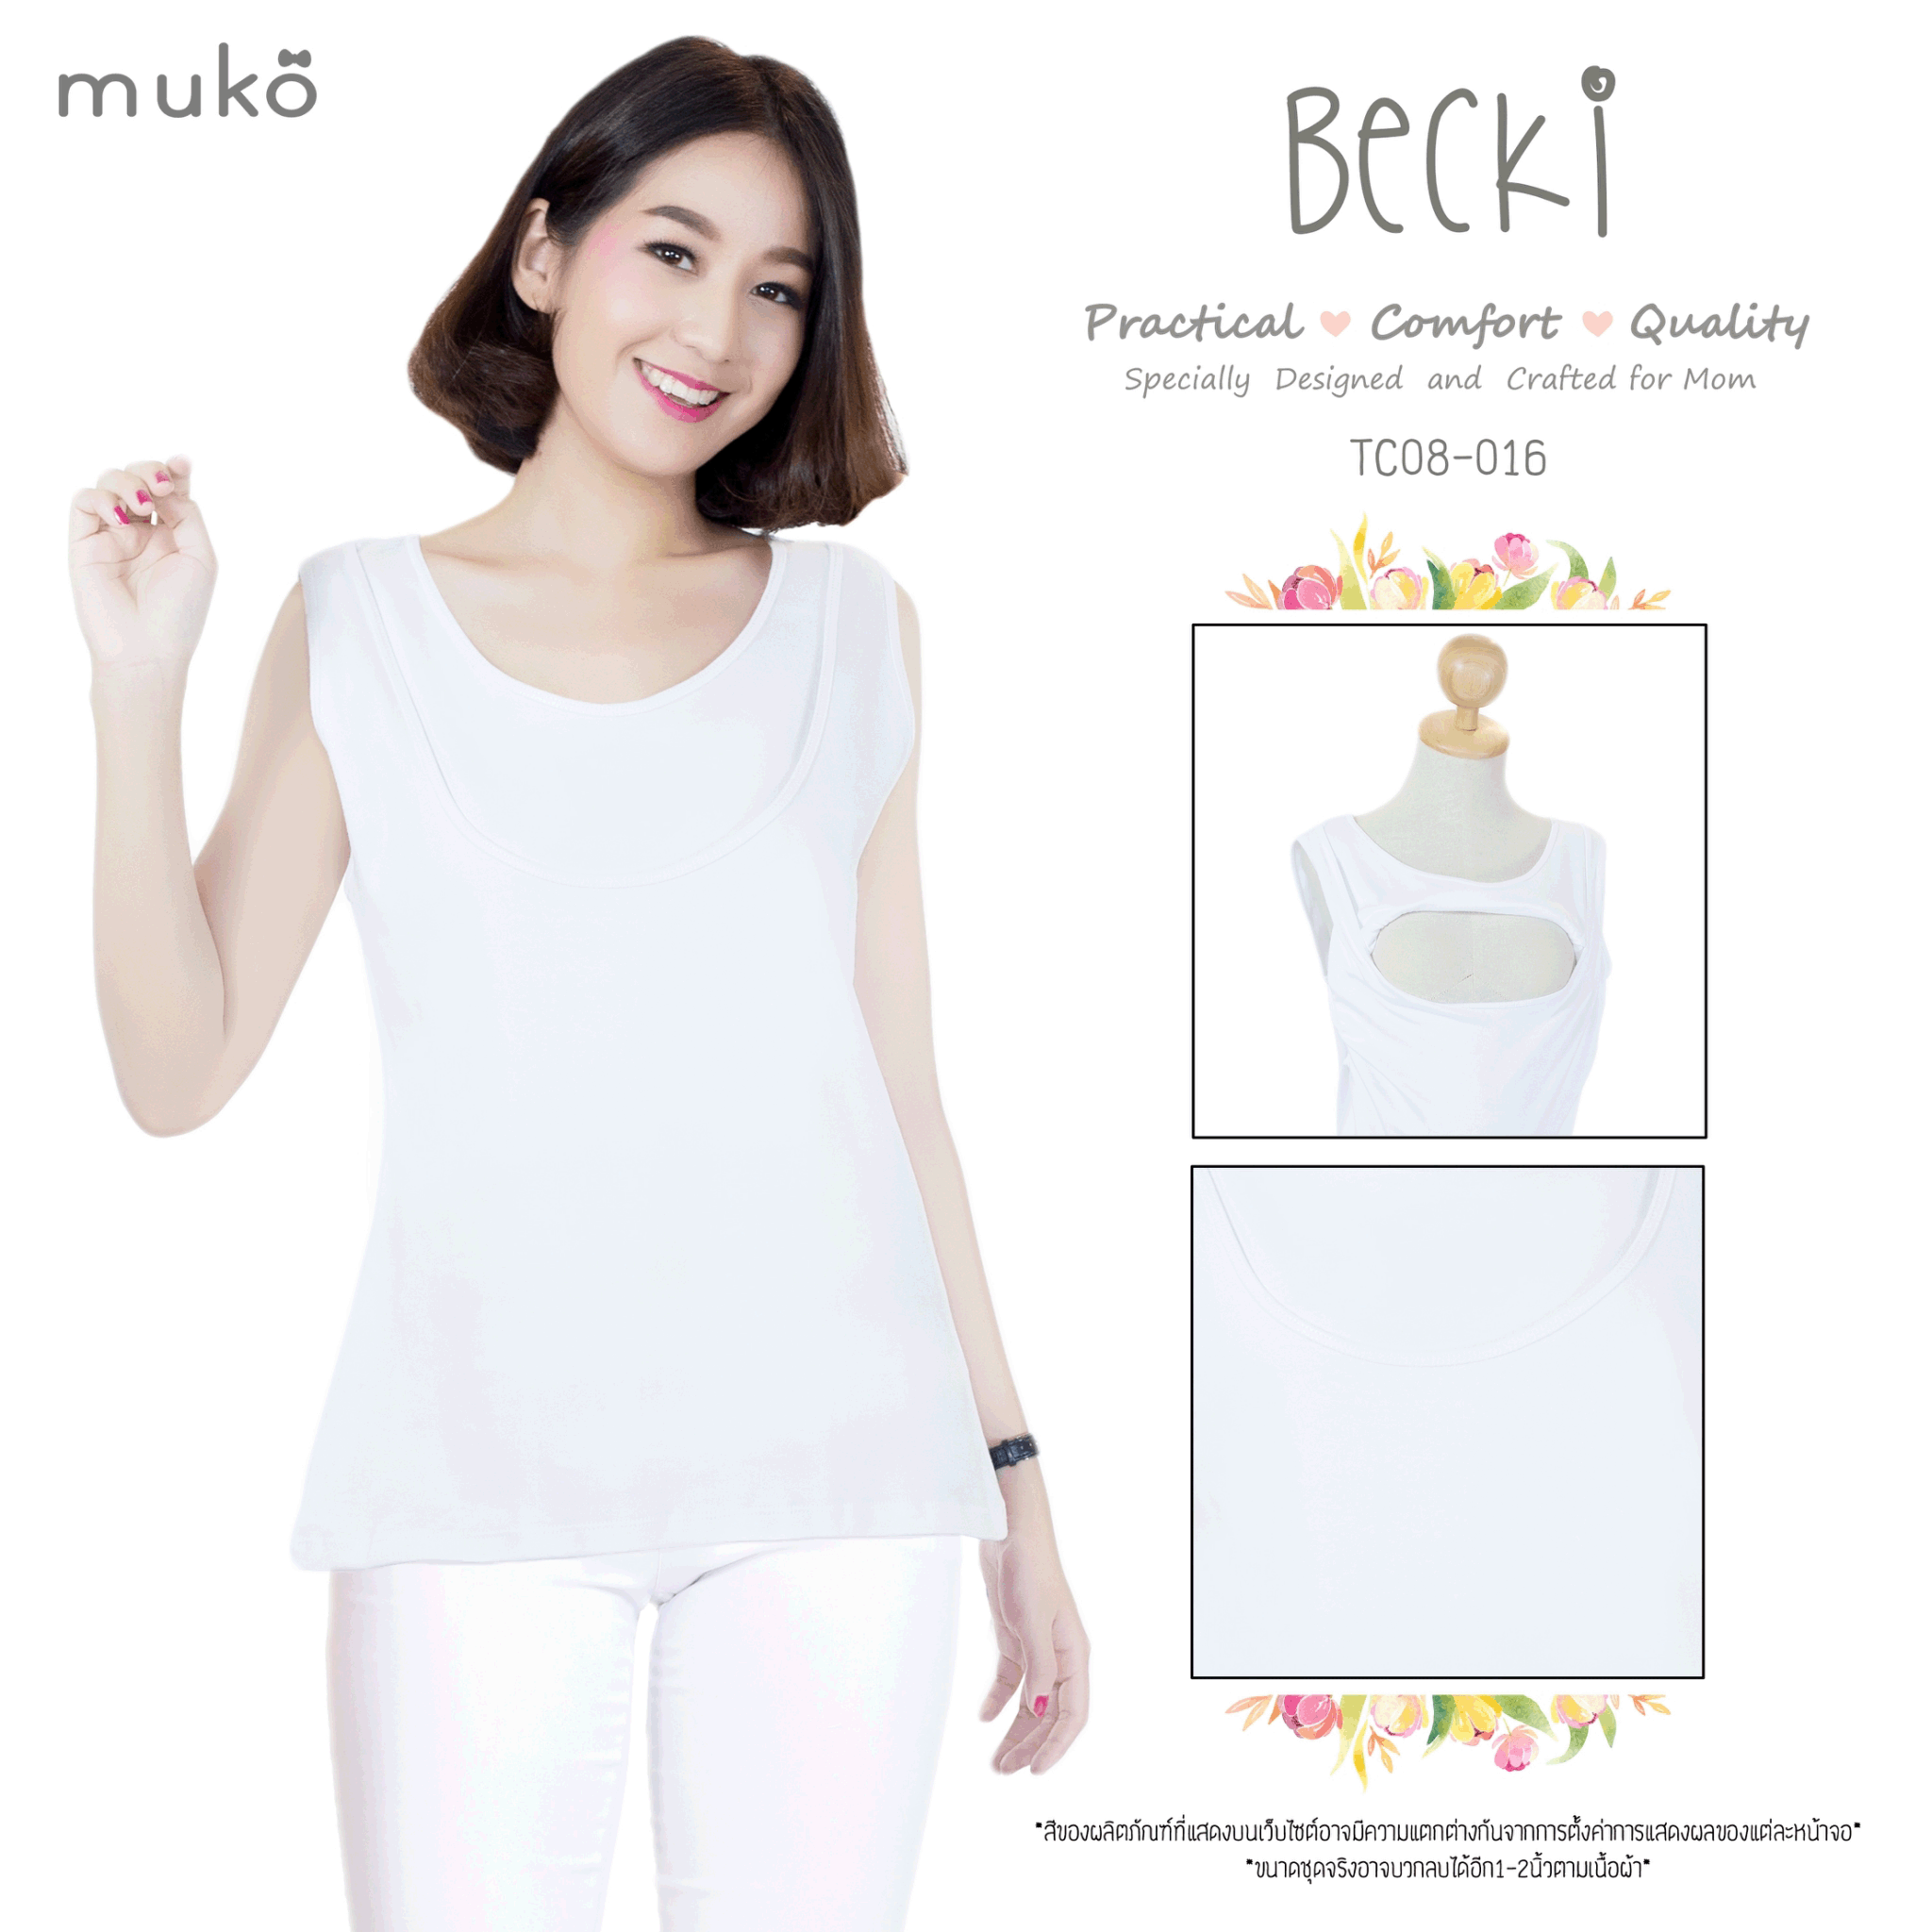 Muko Becki เสื้อเปิดให้นม ชุดคลุมท้อง TC08-016L สีขาว